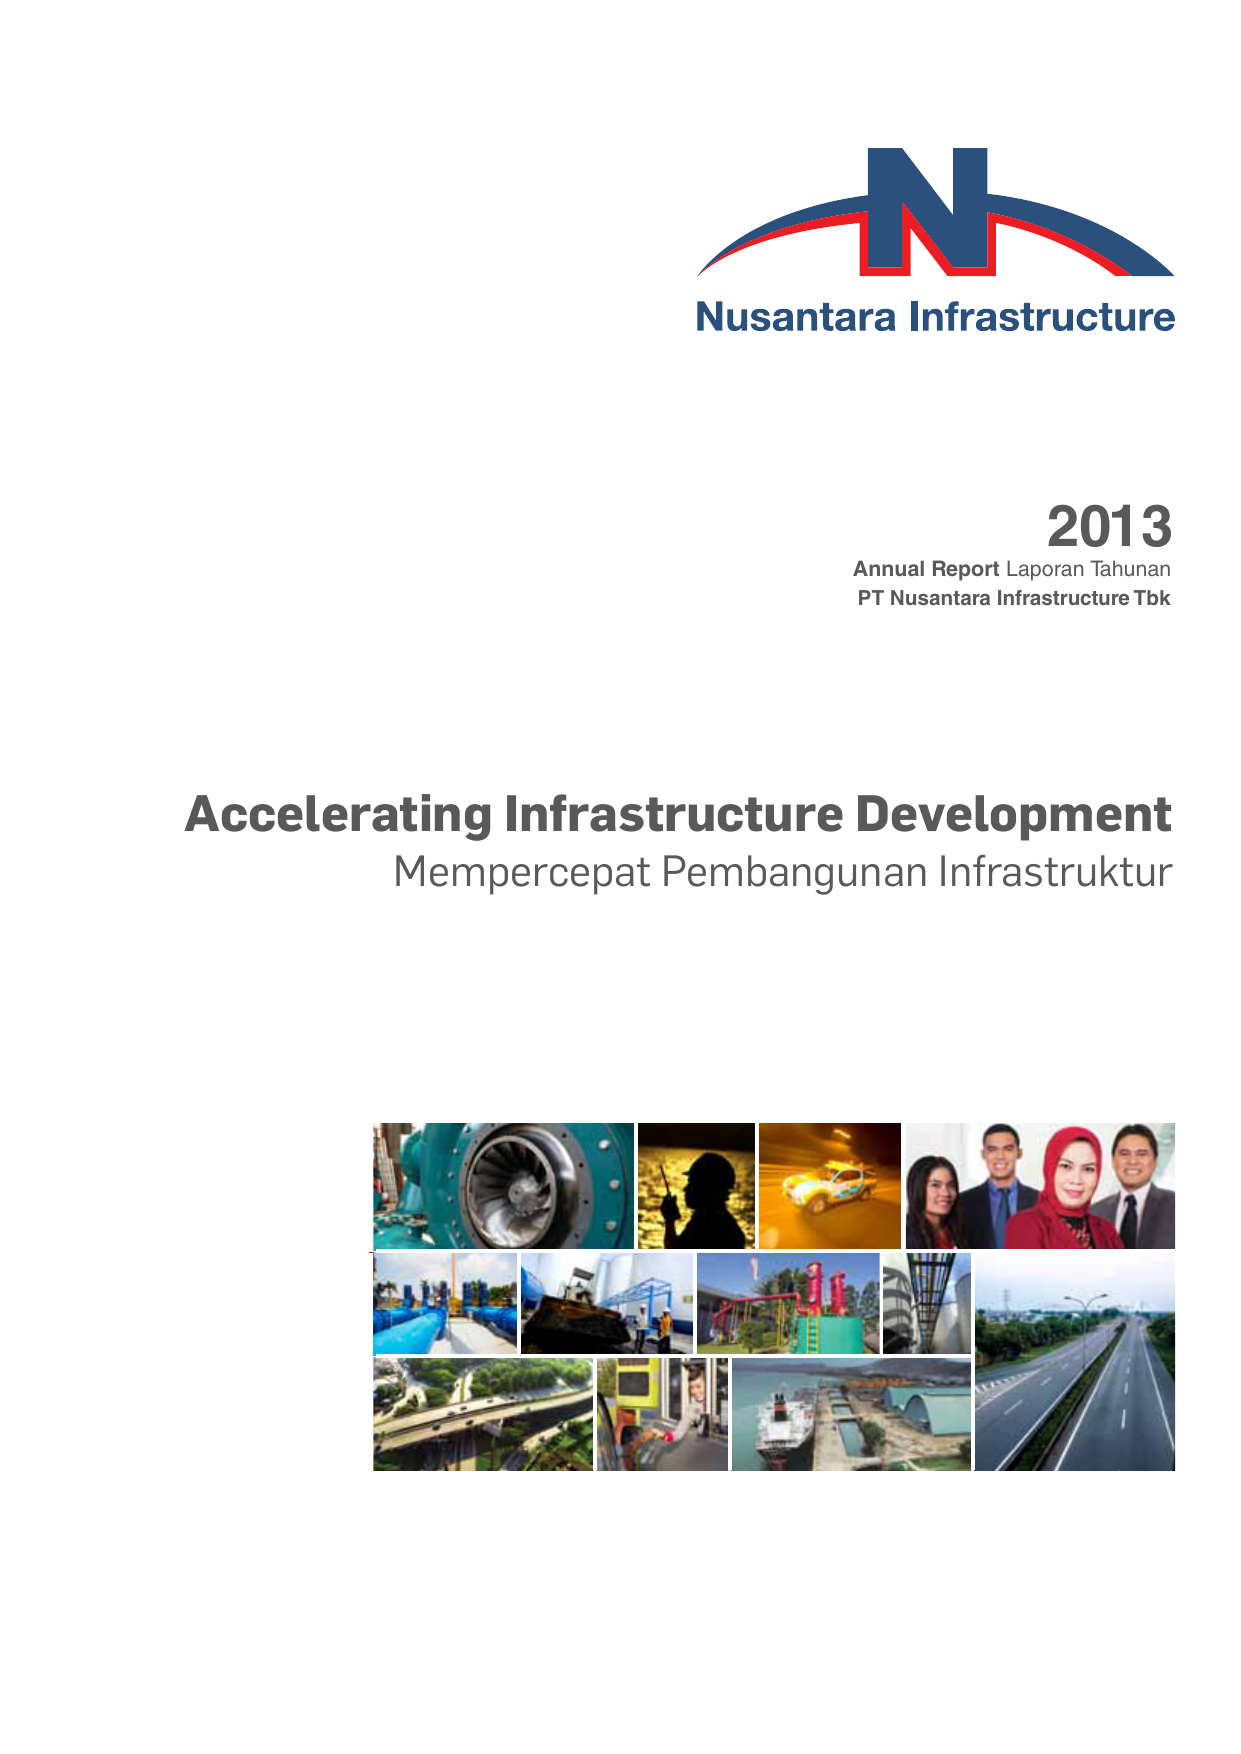 Mempercepat Pembangunan Infrastruktur Pembangunan infrastruktur memegang peranan sangat penting dalam rangka mendorong pertumbuhan ekonomi nasional